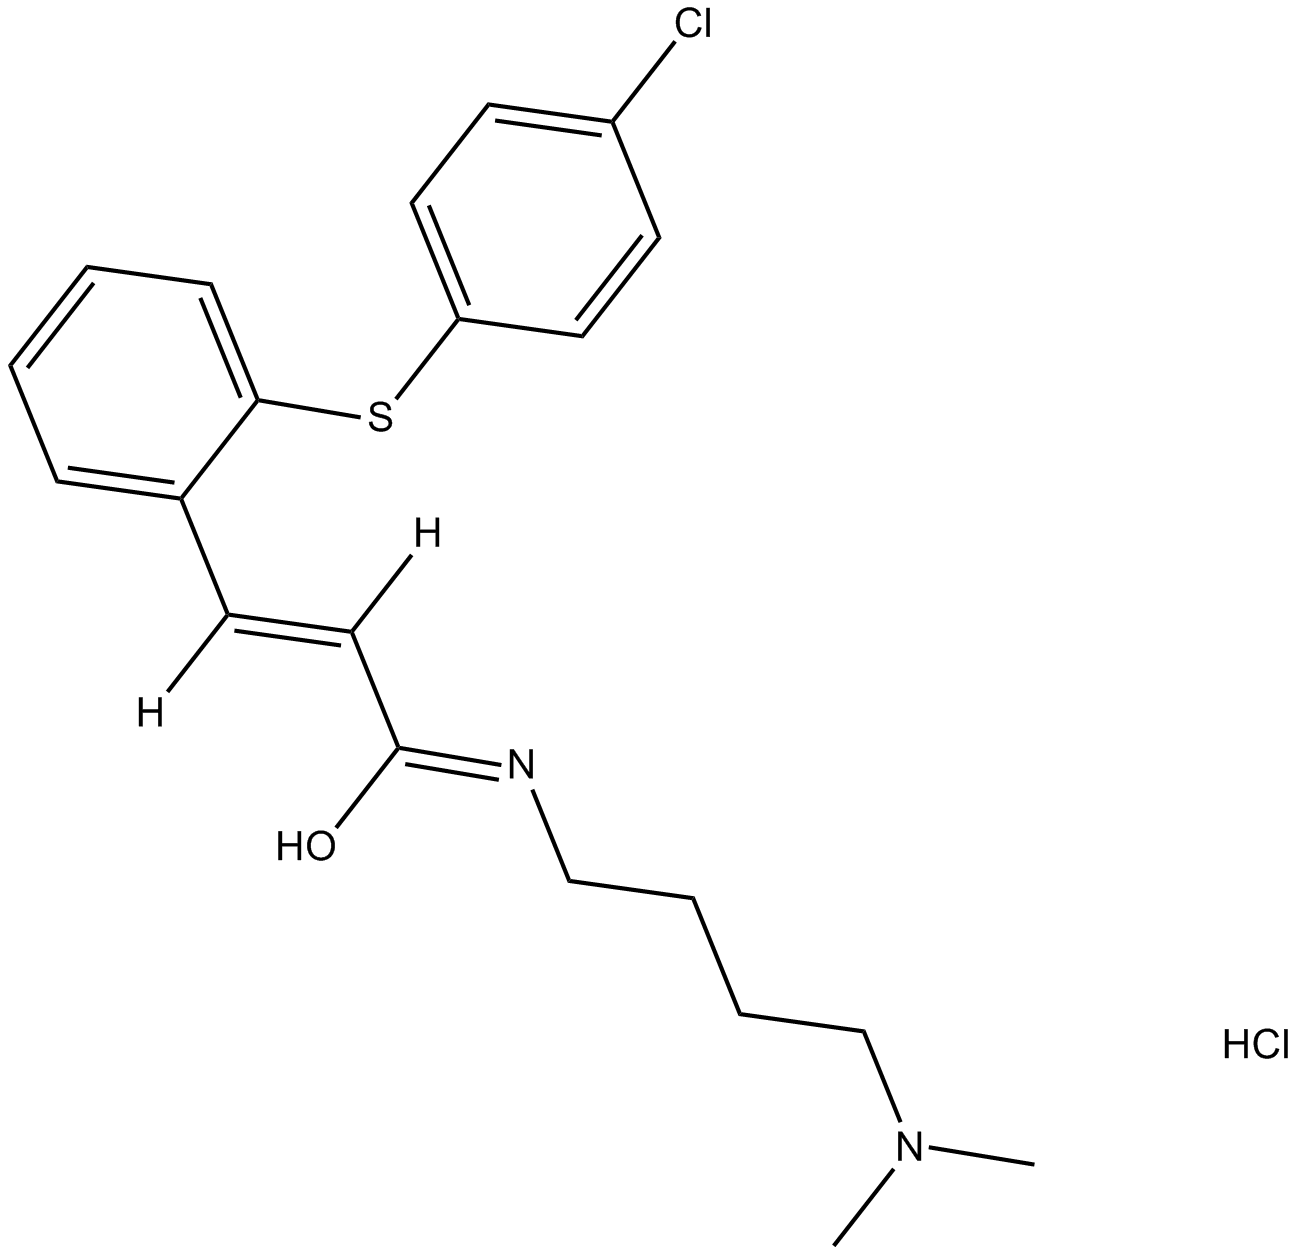 A 350619 hydrochloride